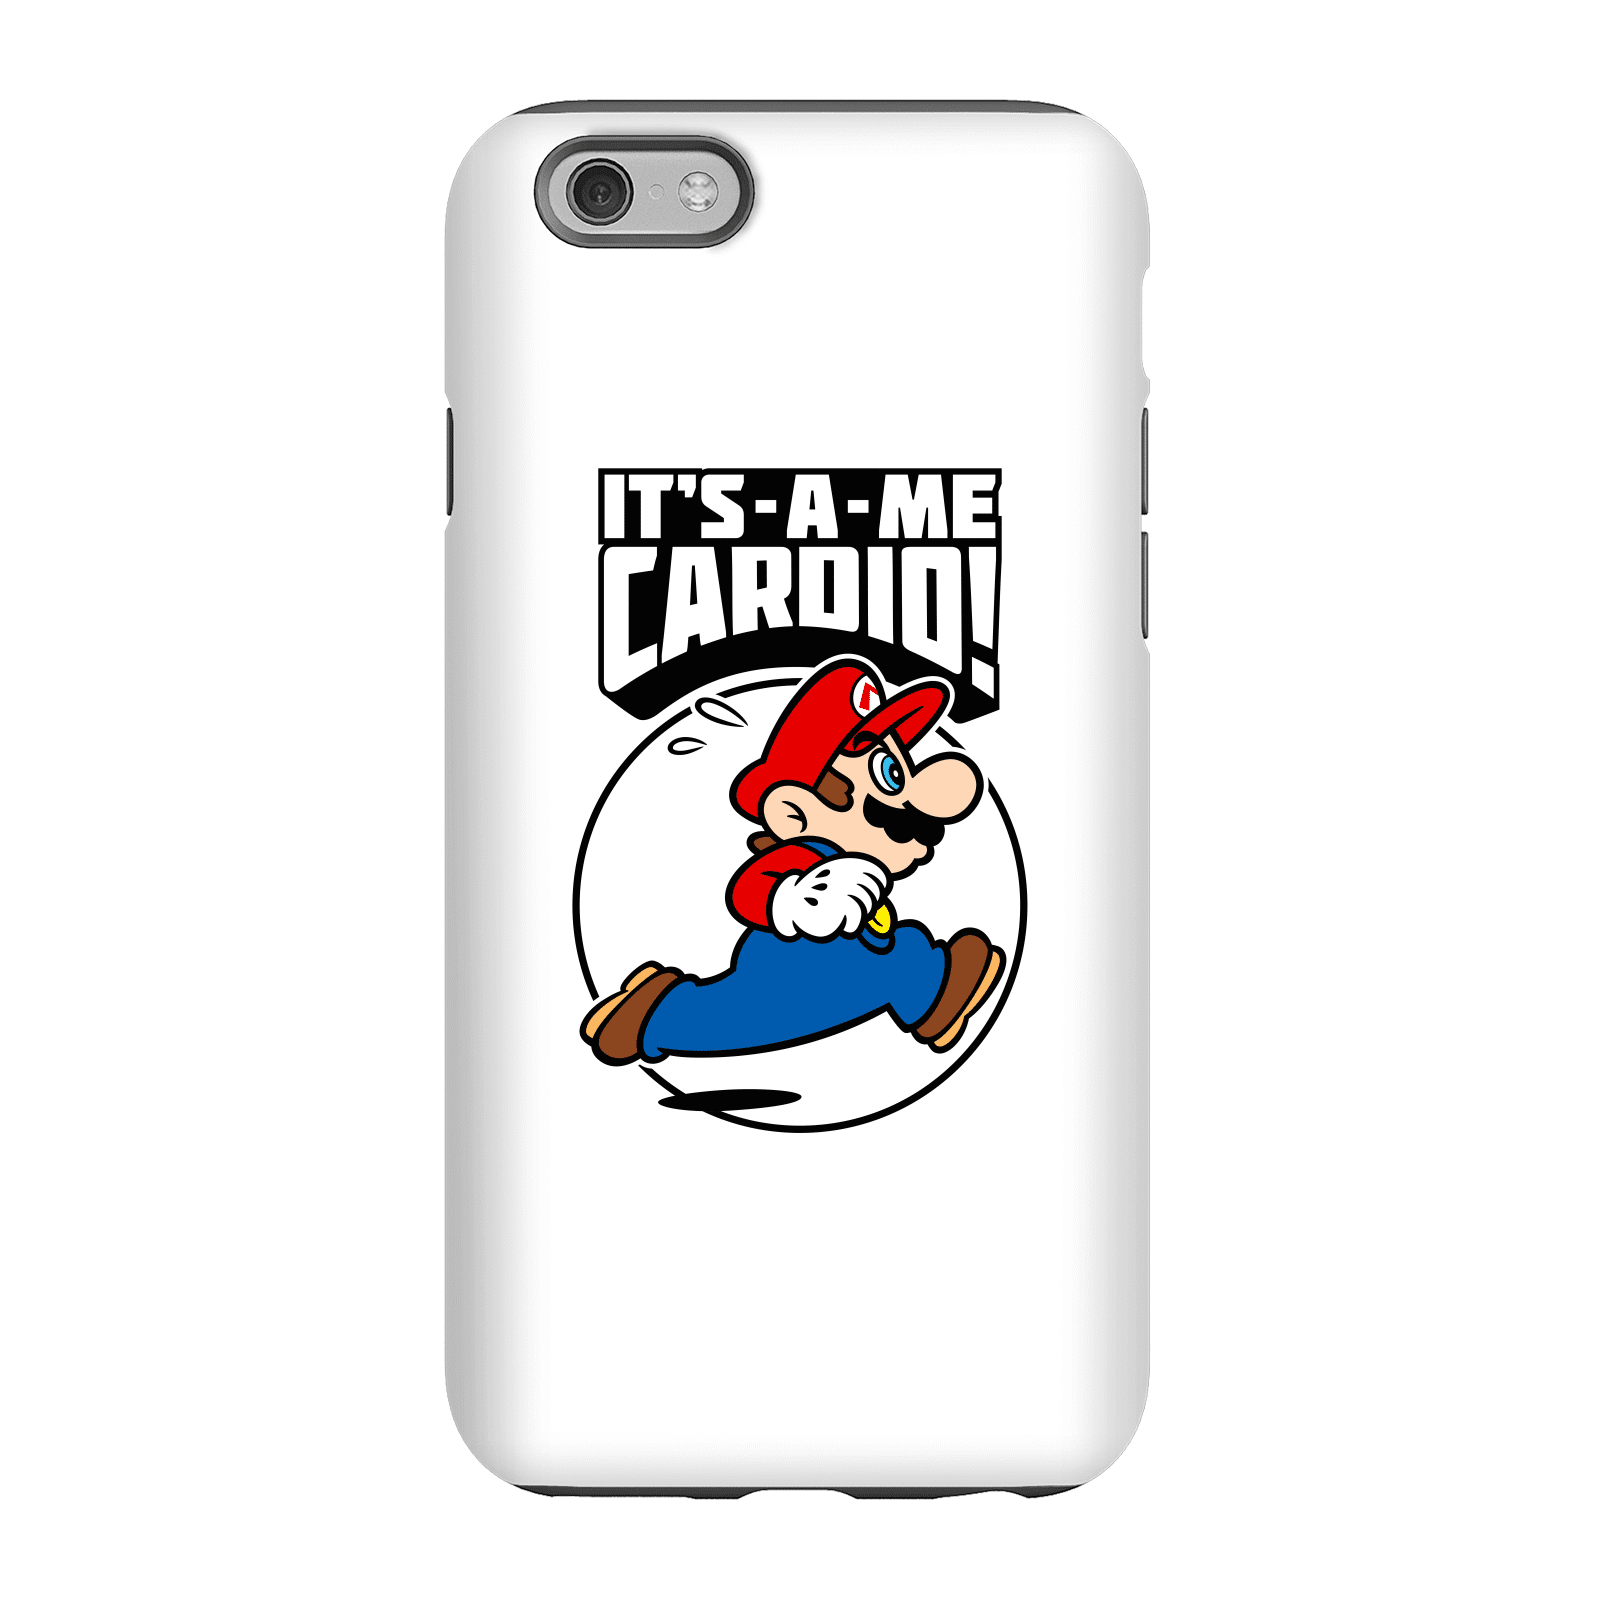 Nintendo Super Mario Cardio Phone Case - iPhone 6 - Tough Case - Gloss